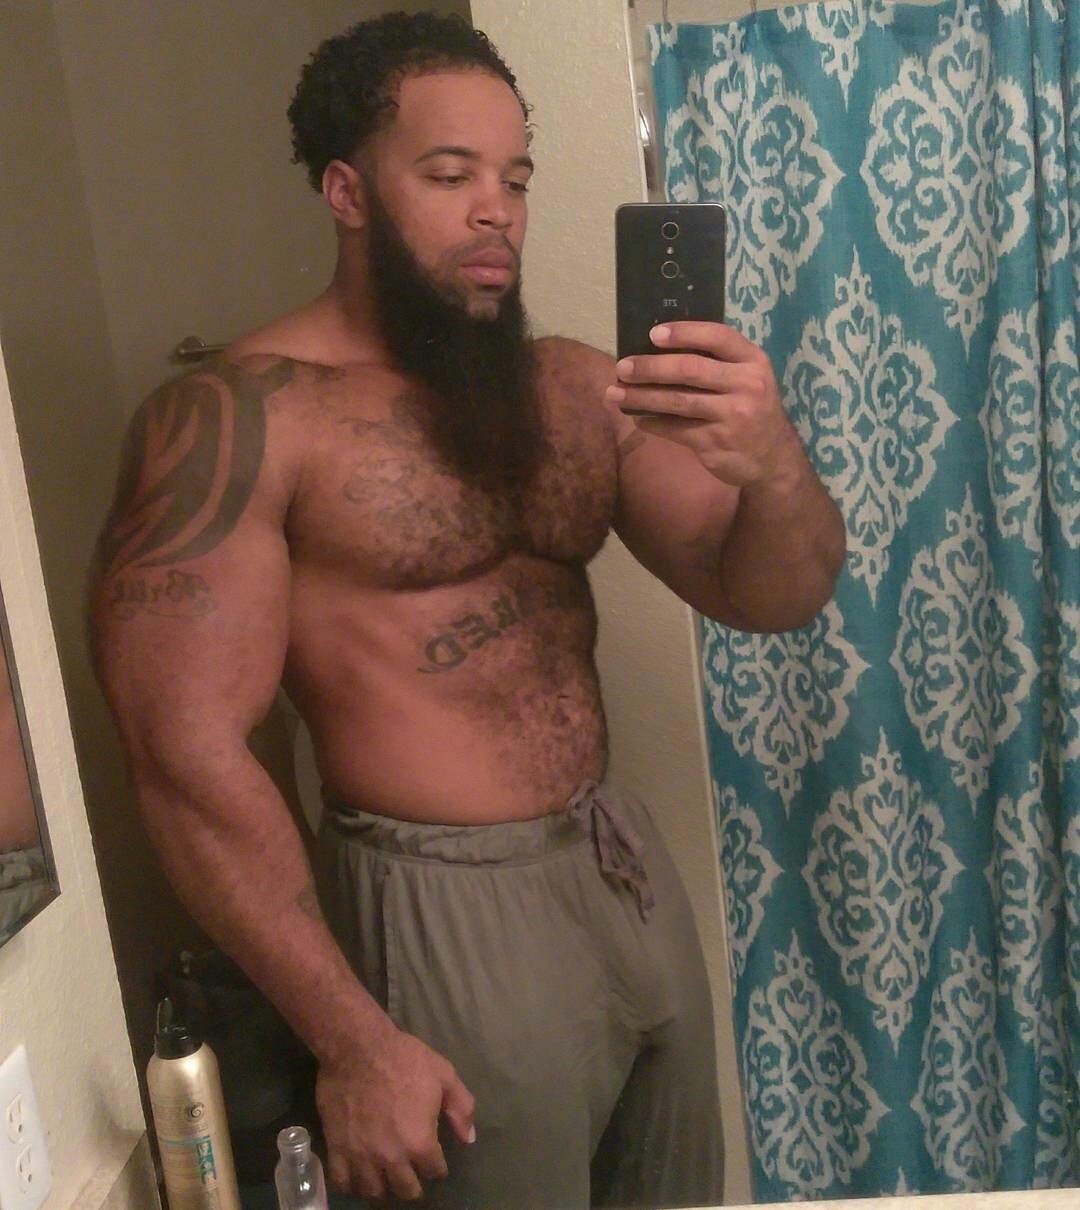 hairy muscle man bulge selfie